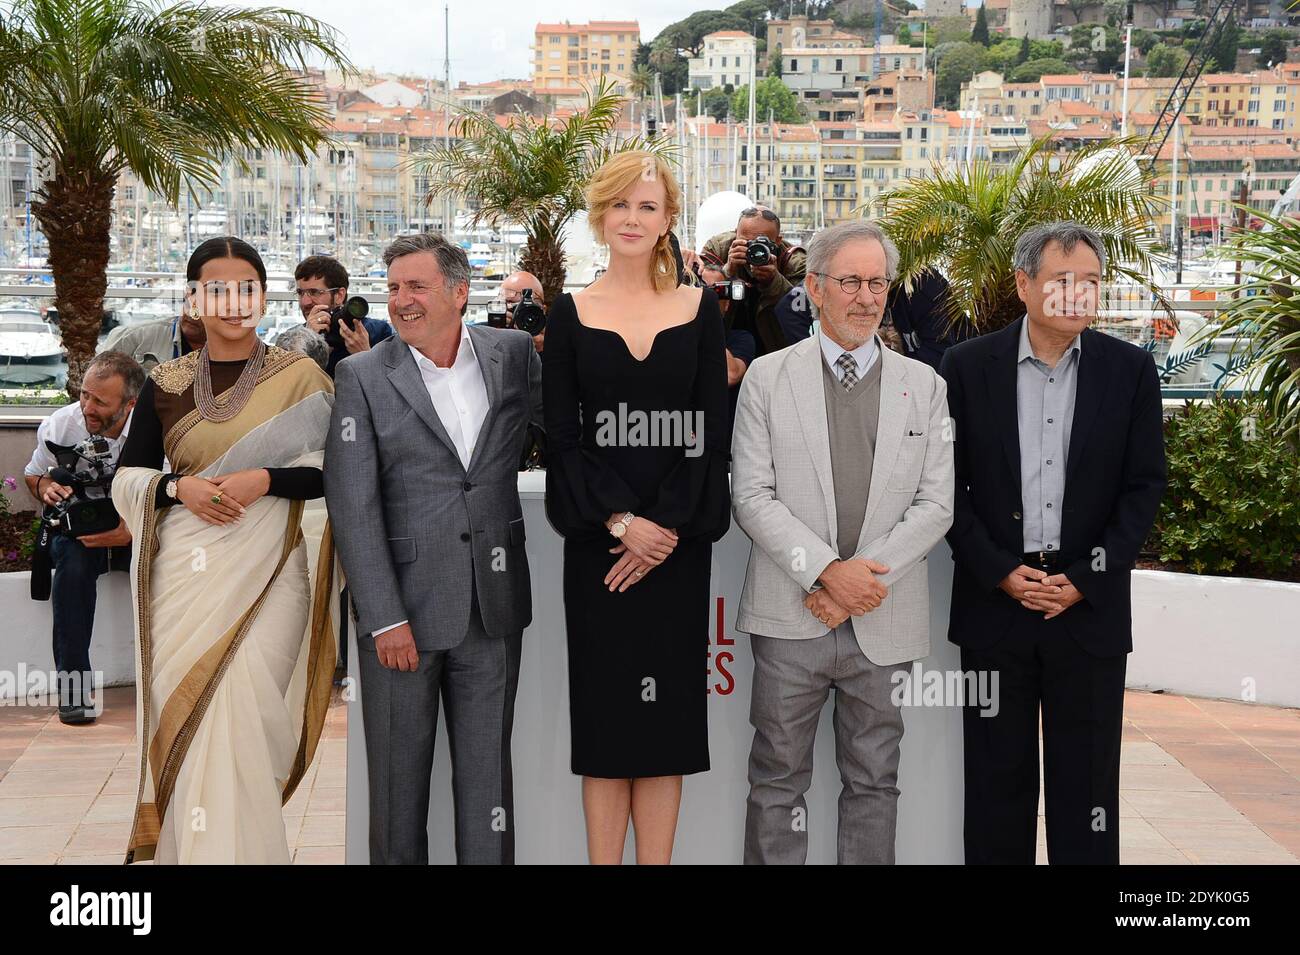 Vidya Balan, Daniel Auteuil, Nicole Kidman, Director Steven Spielberg, Ang Lee posando en la fotocelda del jurado celebrada en el Palais des Festivals como parte del 66º festival de cine de Cannes, en Cannes, sur de Francia, el 15 de mayo de 2013. Foto de Nicolas Briquet/ABACAPRESS.COM Foto de stock